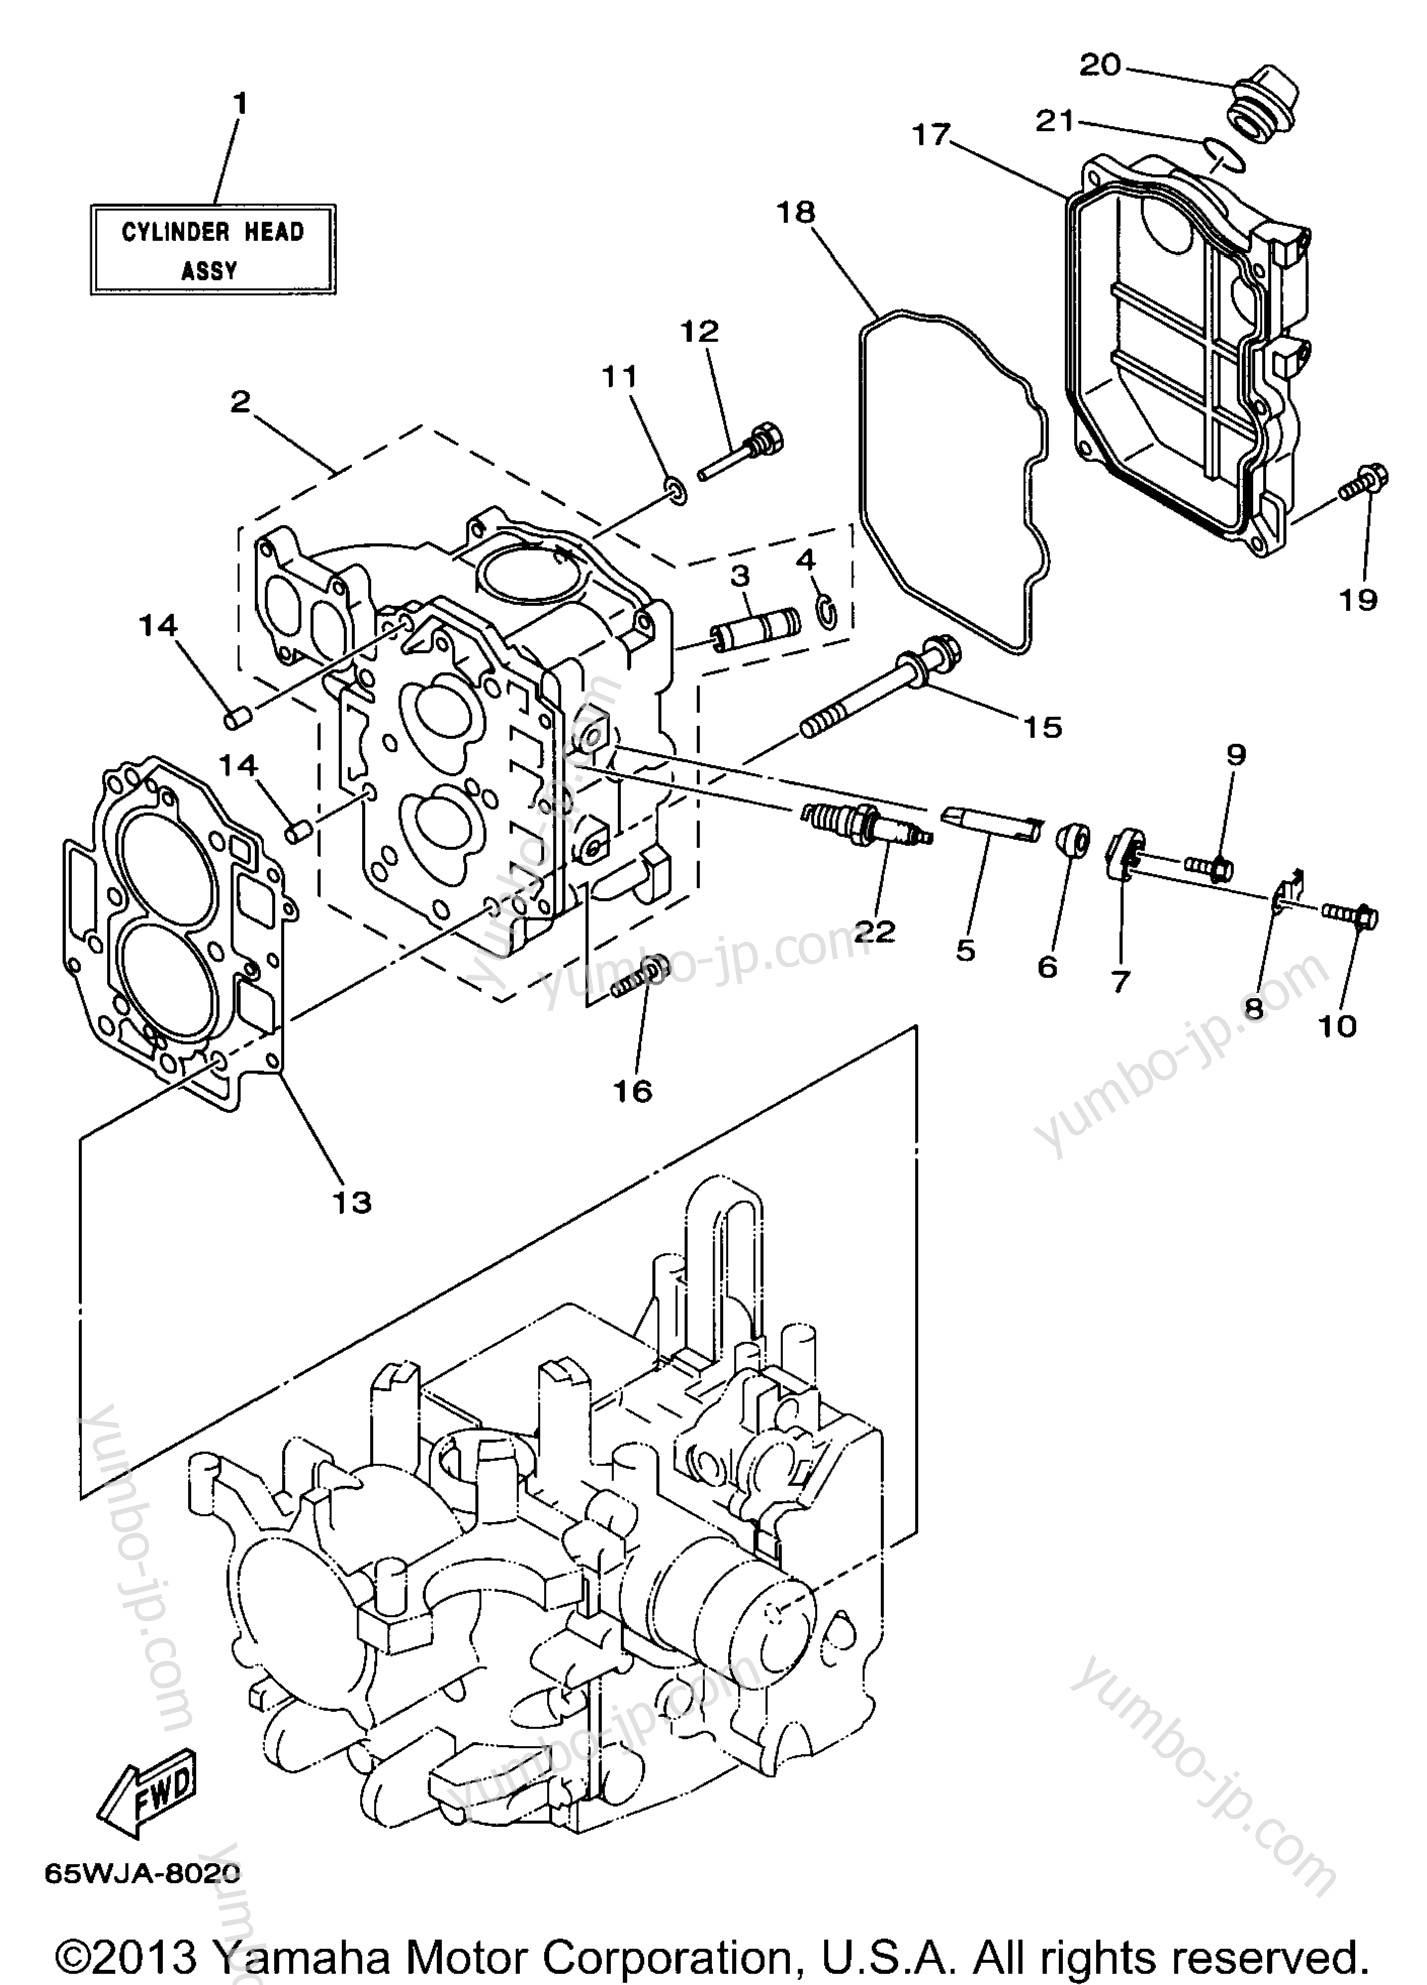 Cylinder Crankcase 2 для лодочных моторов YAMAHA F25TLRW 1998 г.